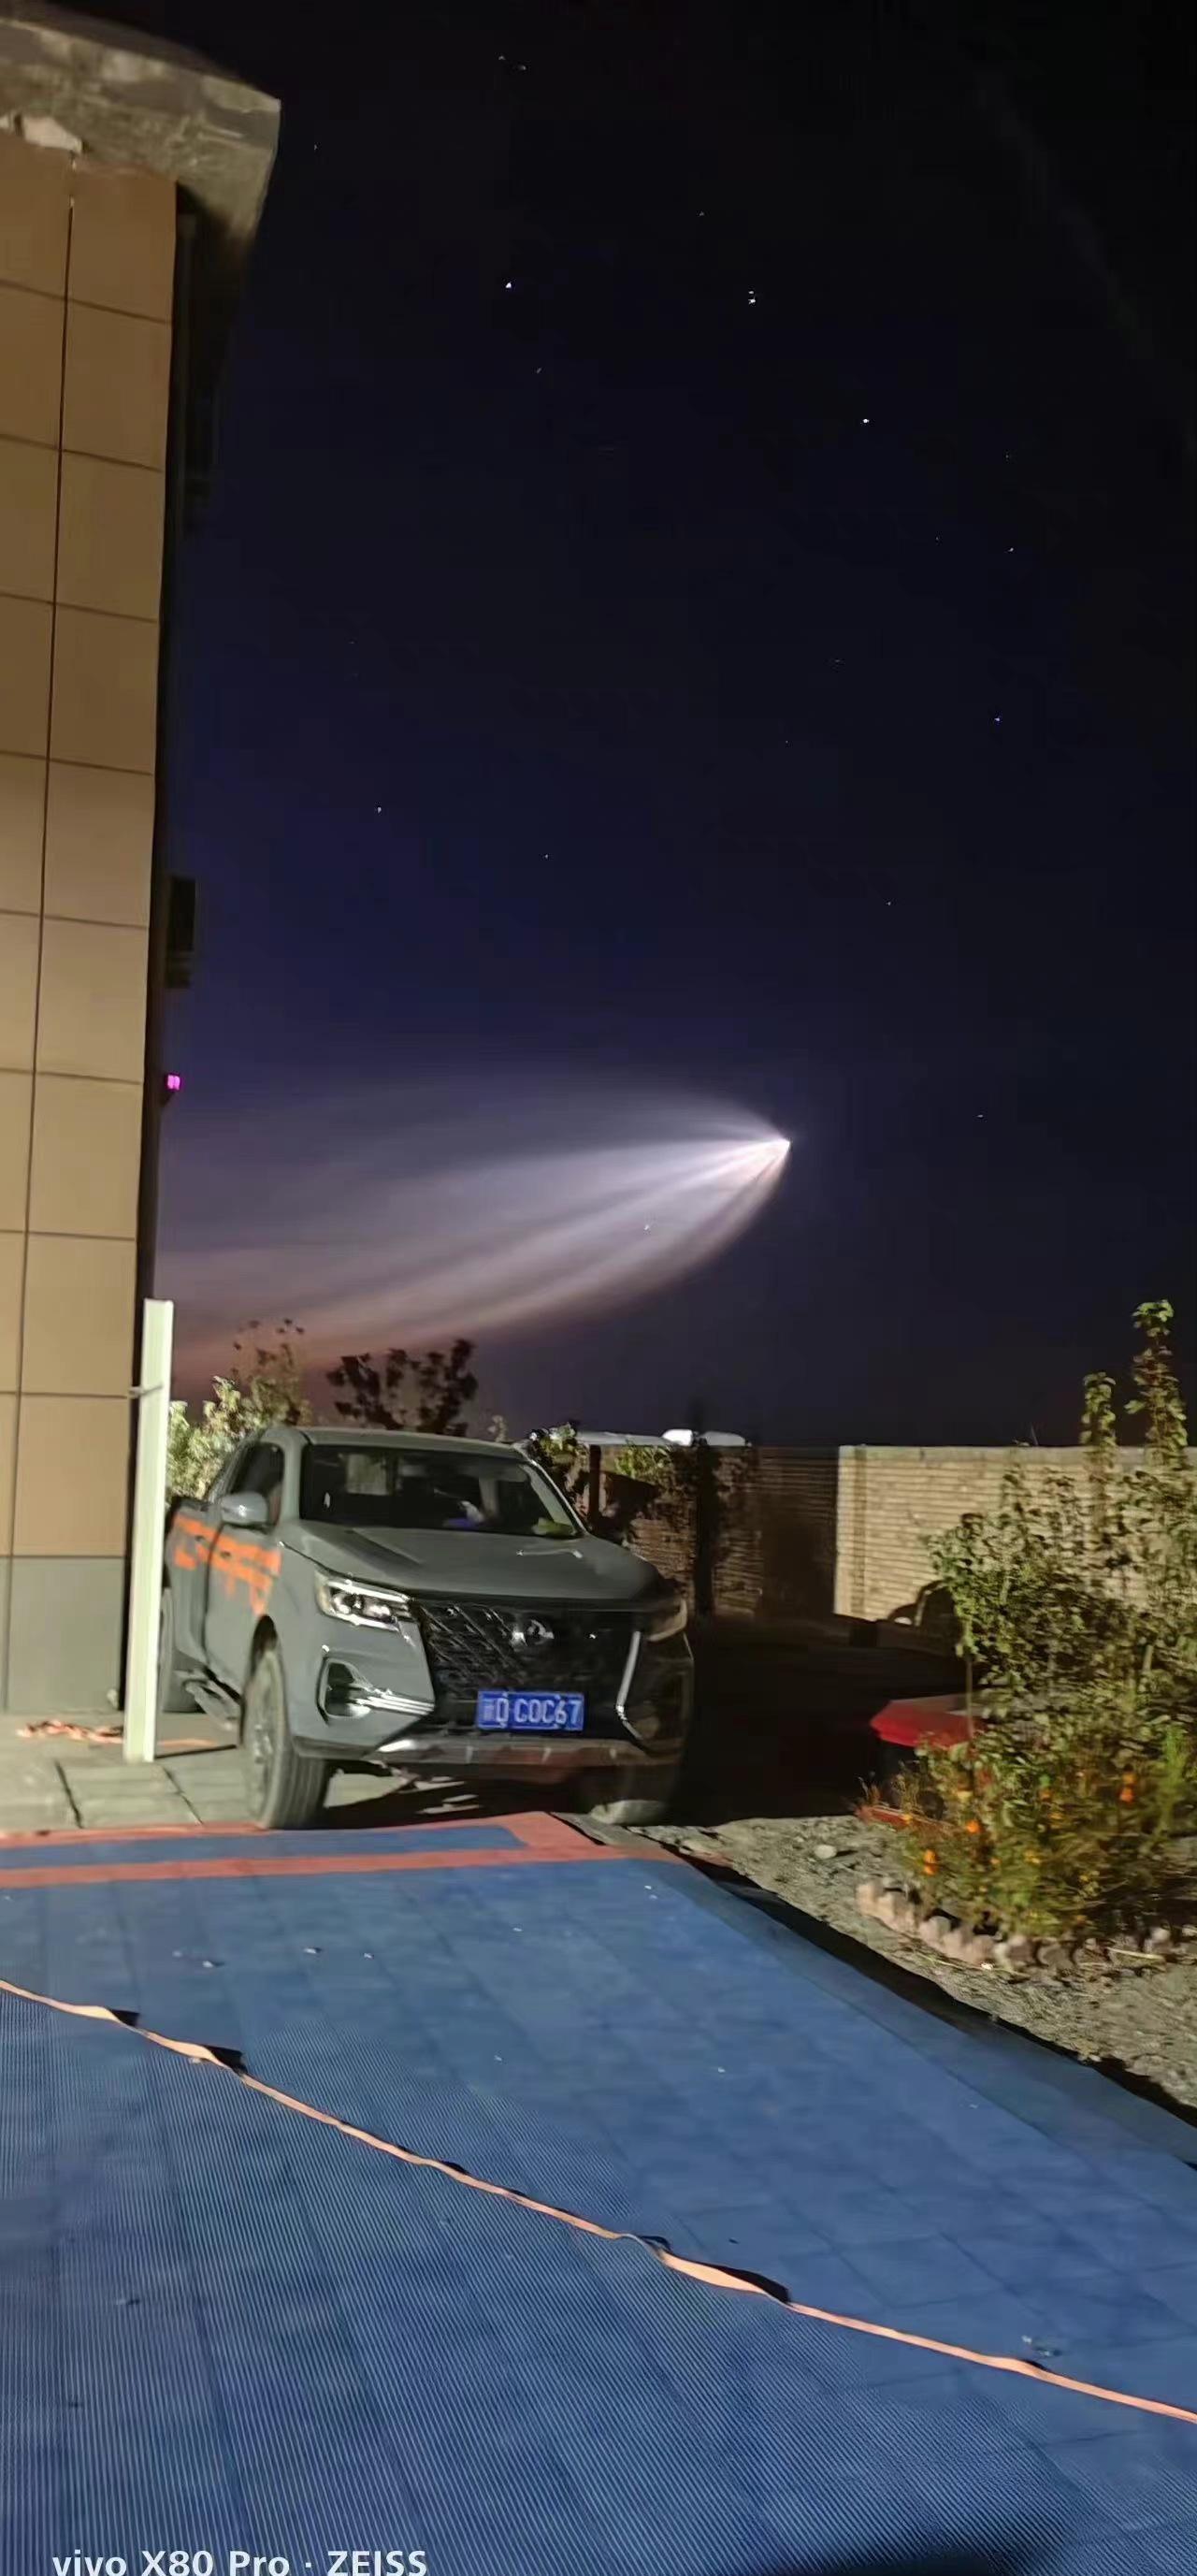 中国再次进行反导试验？新疆夜空出现巨型UFO：究竟是何飞行物？